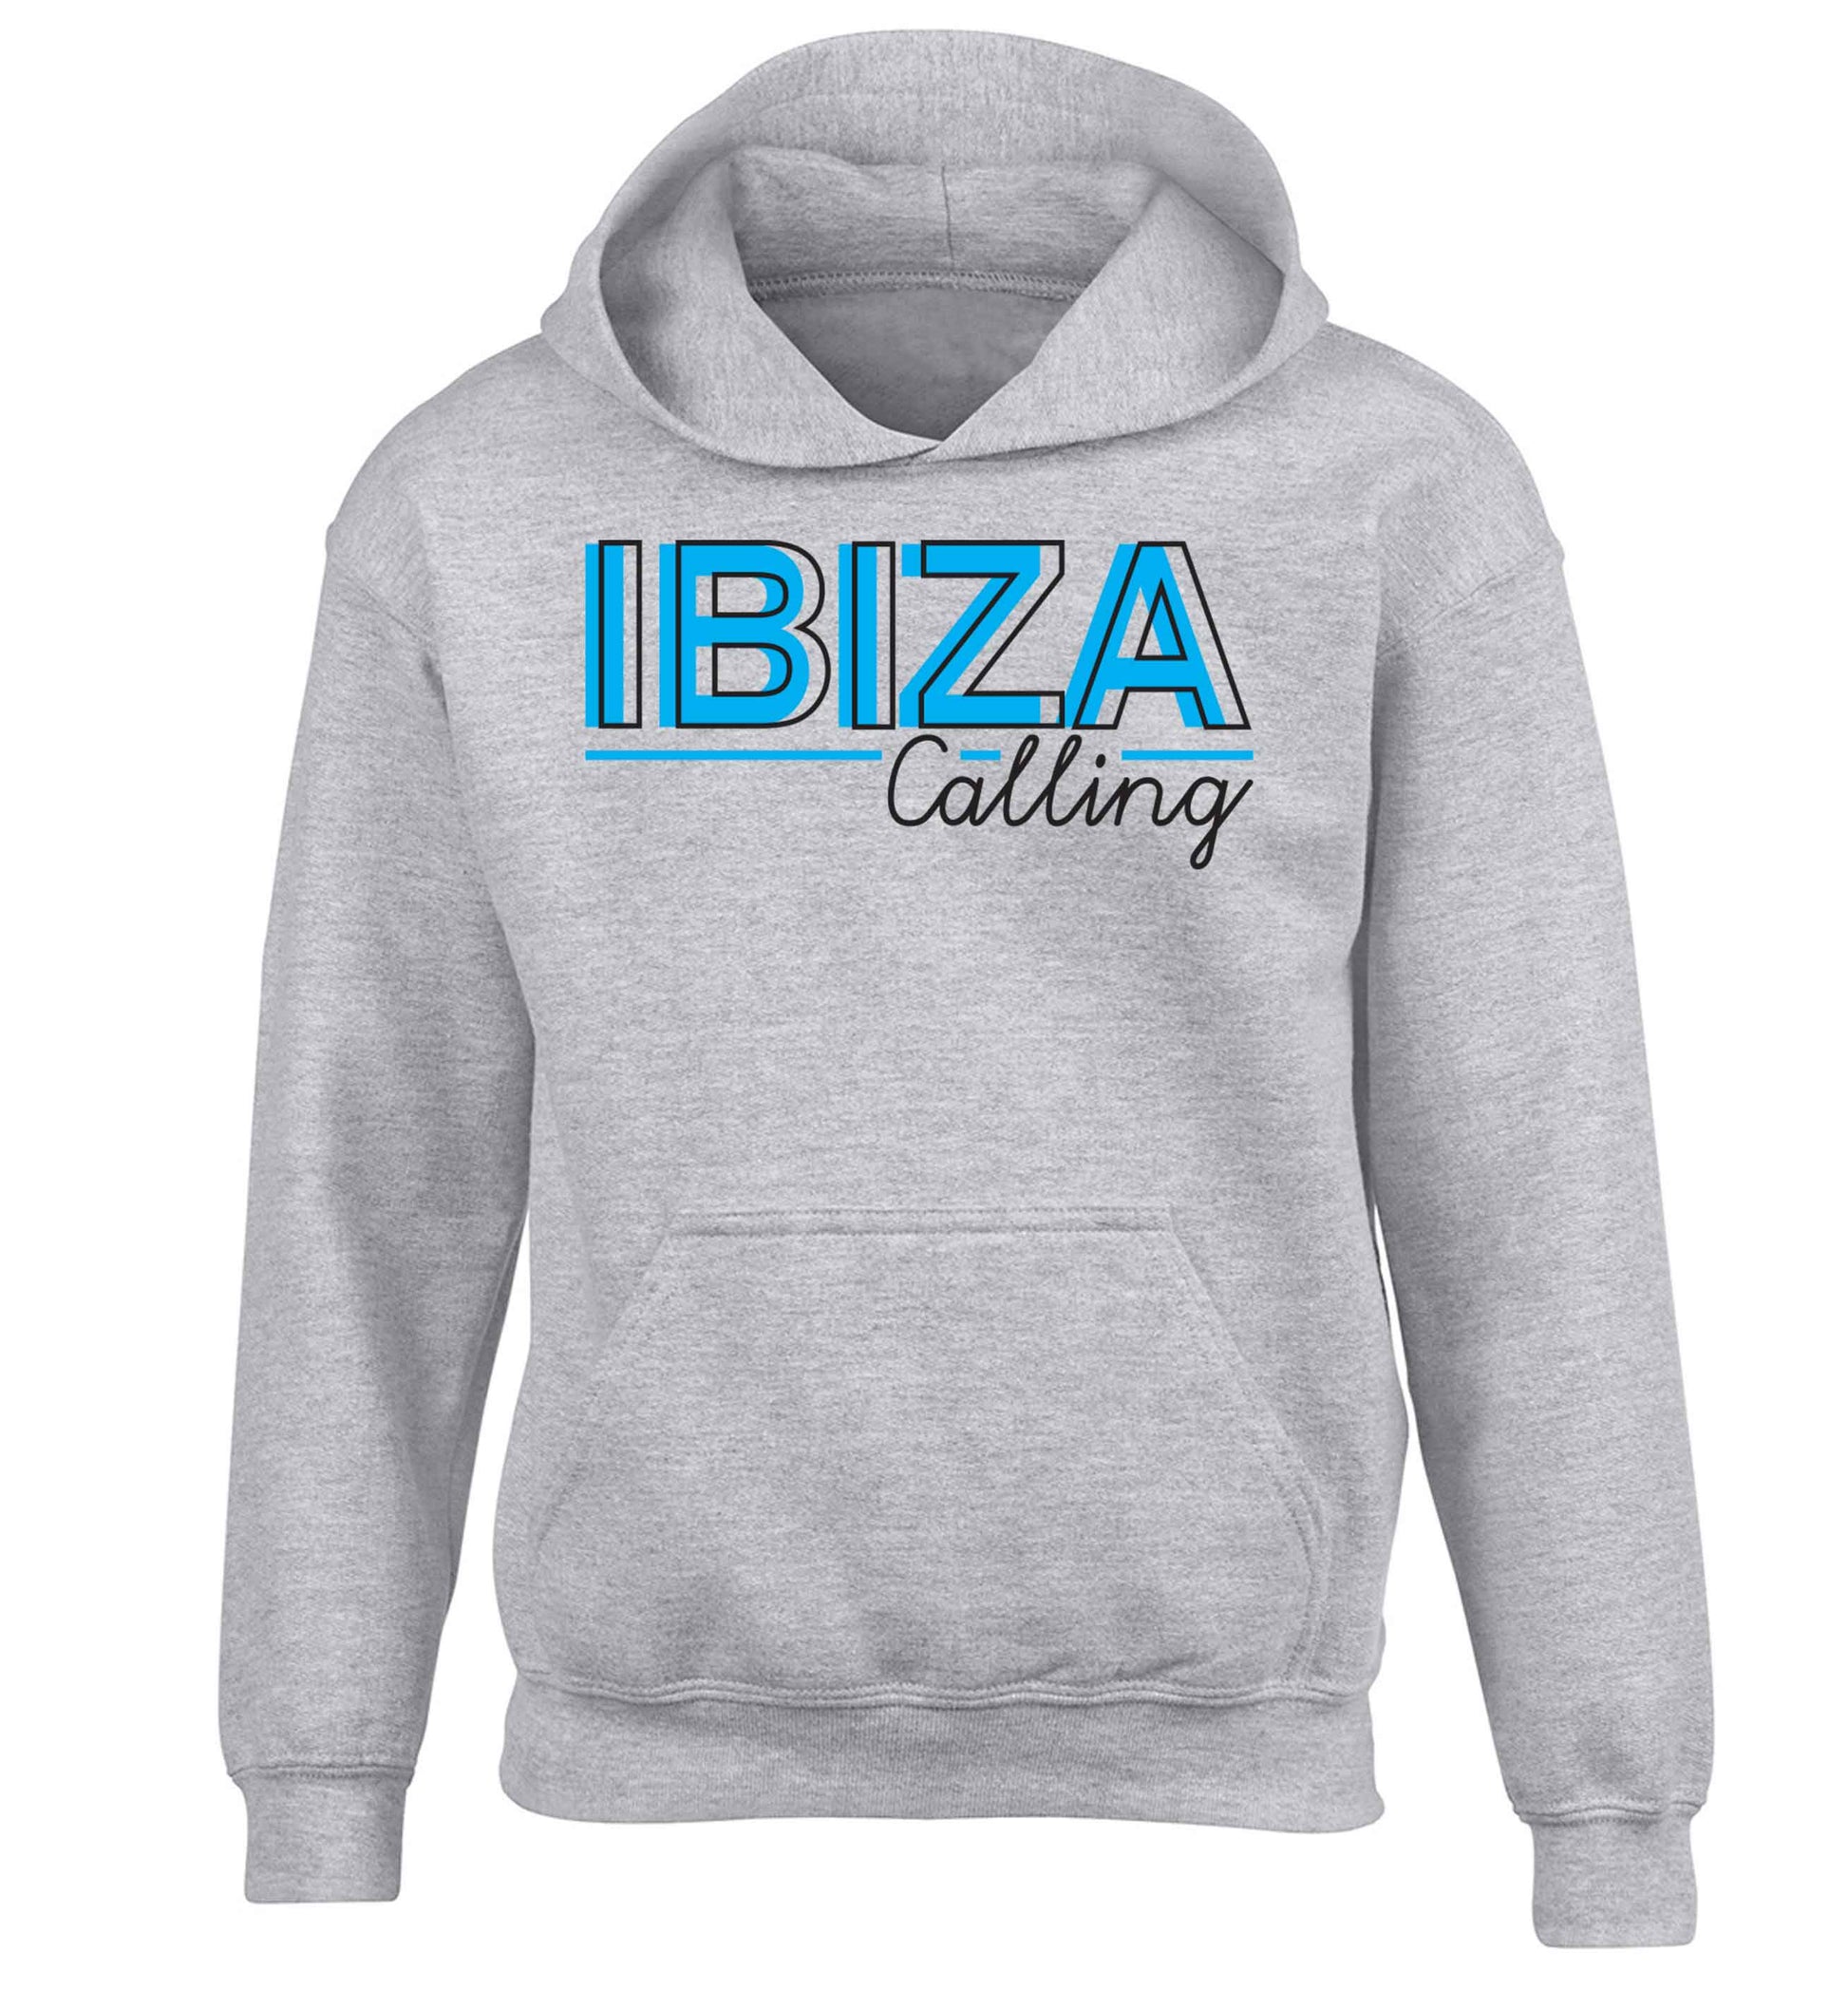 Ibiza calling children's grey hoodie 12-13 Years